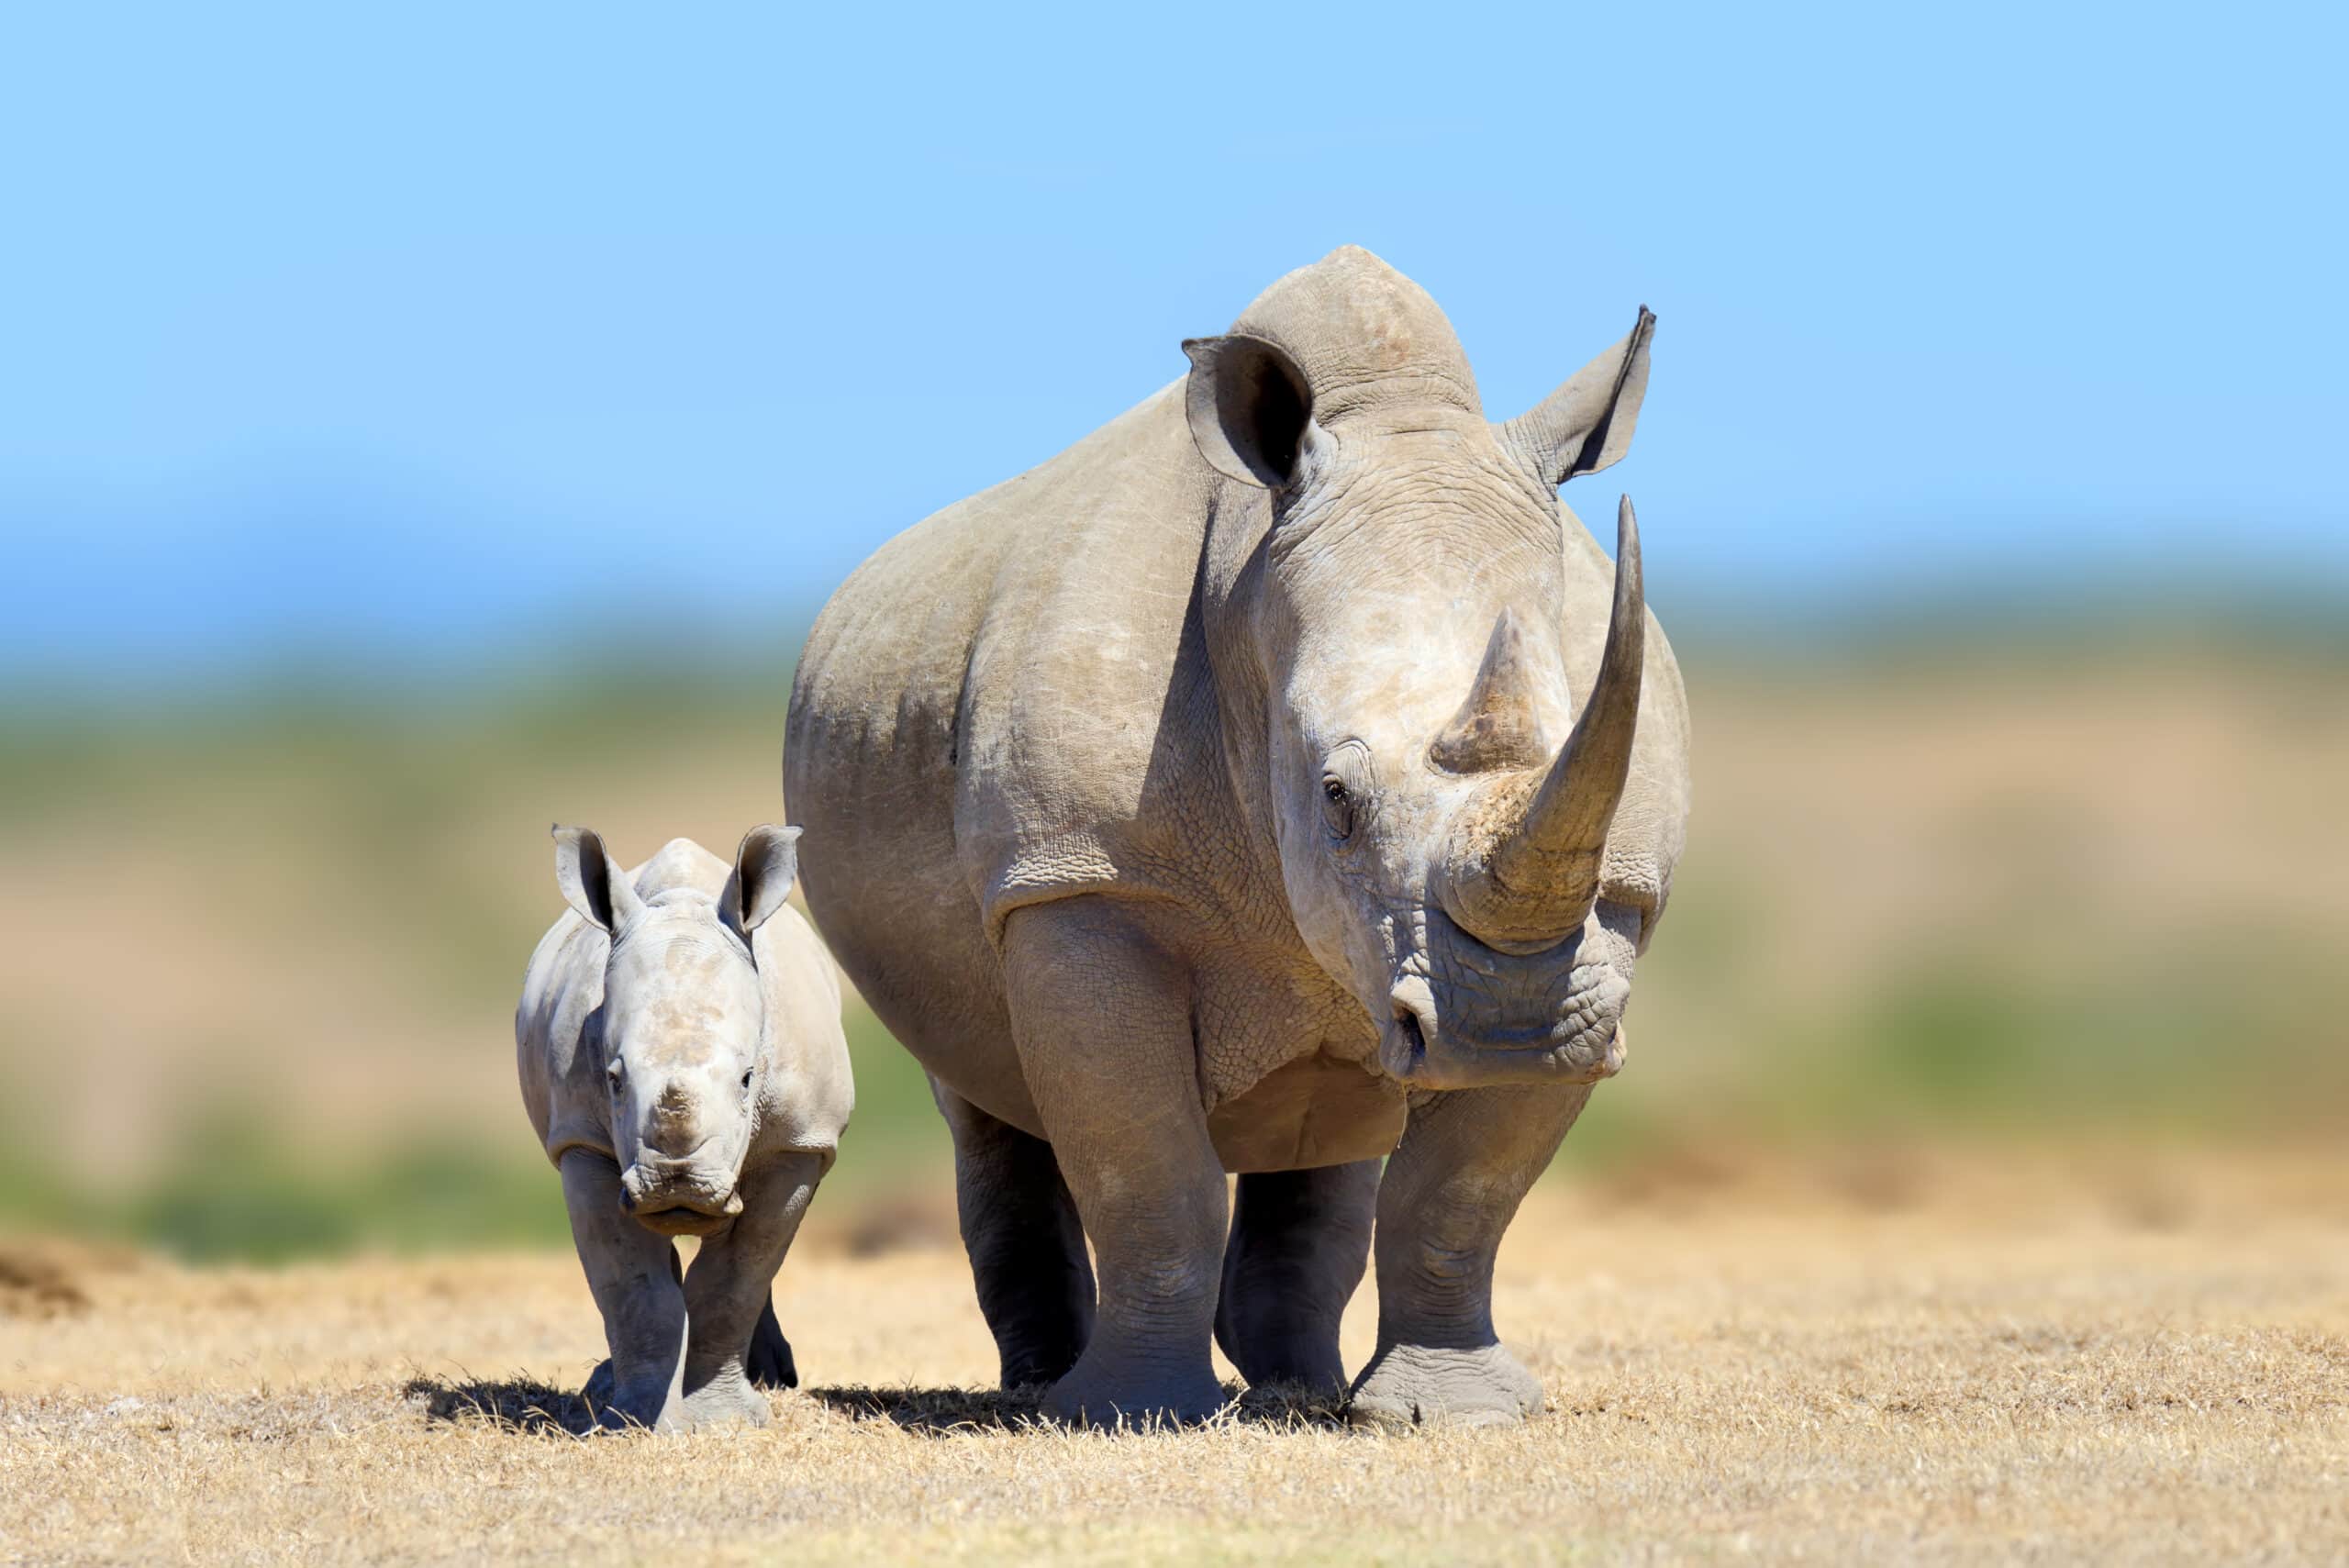 white rhinoceros in the nature habitat kenya afr 2021 08 26 15 55 51 utc scaled